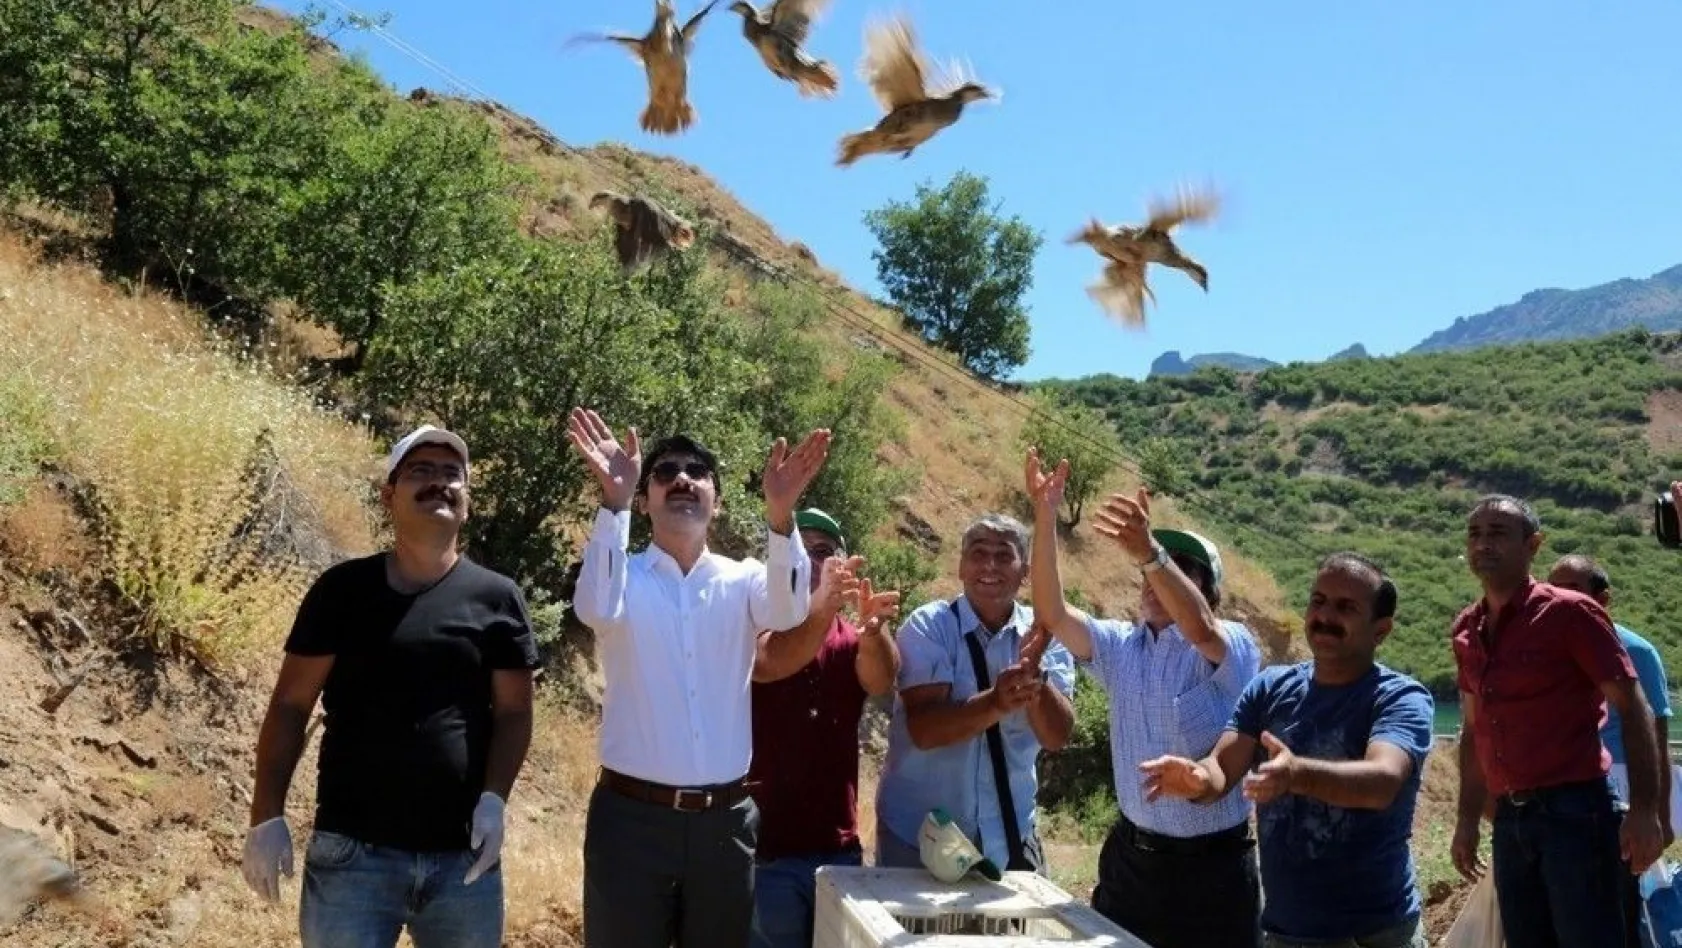 Tunceli'de doğaya bin keklik bırakıldı
